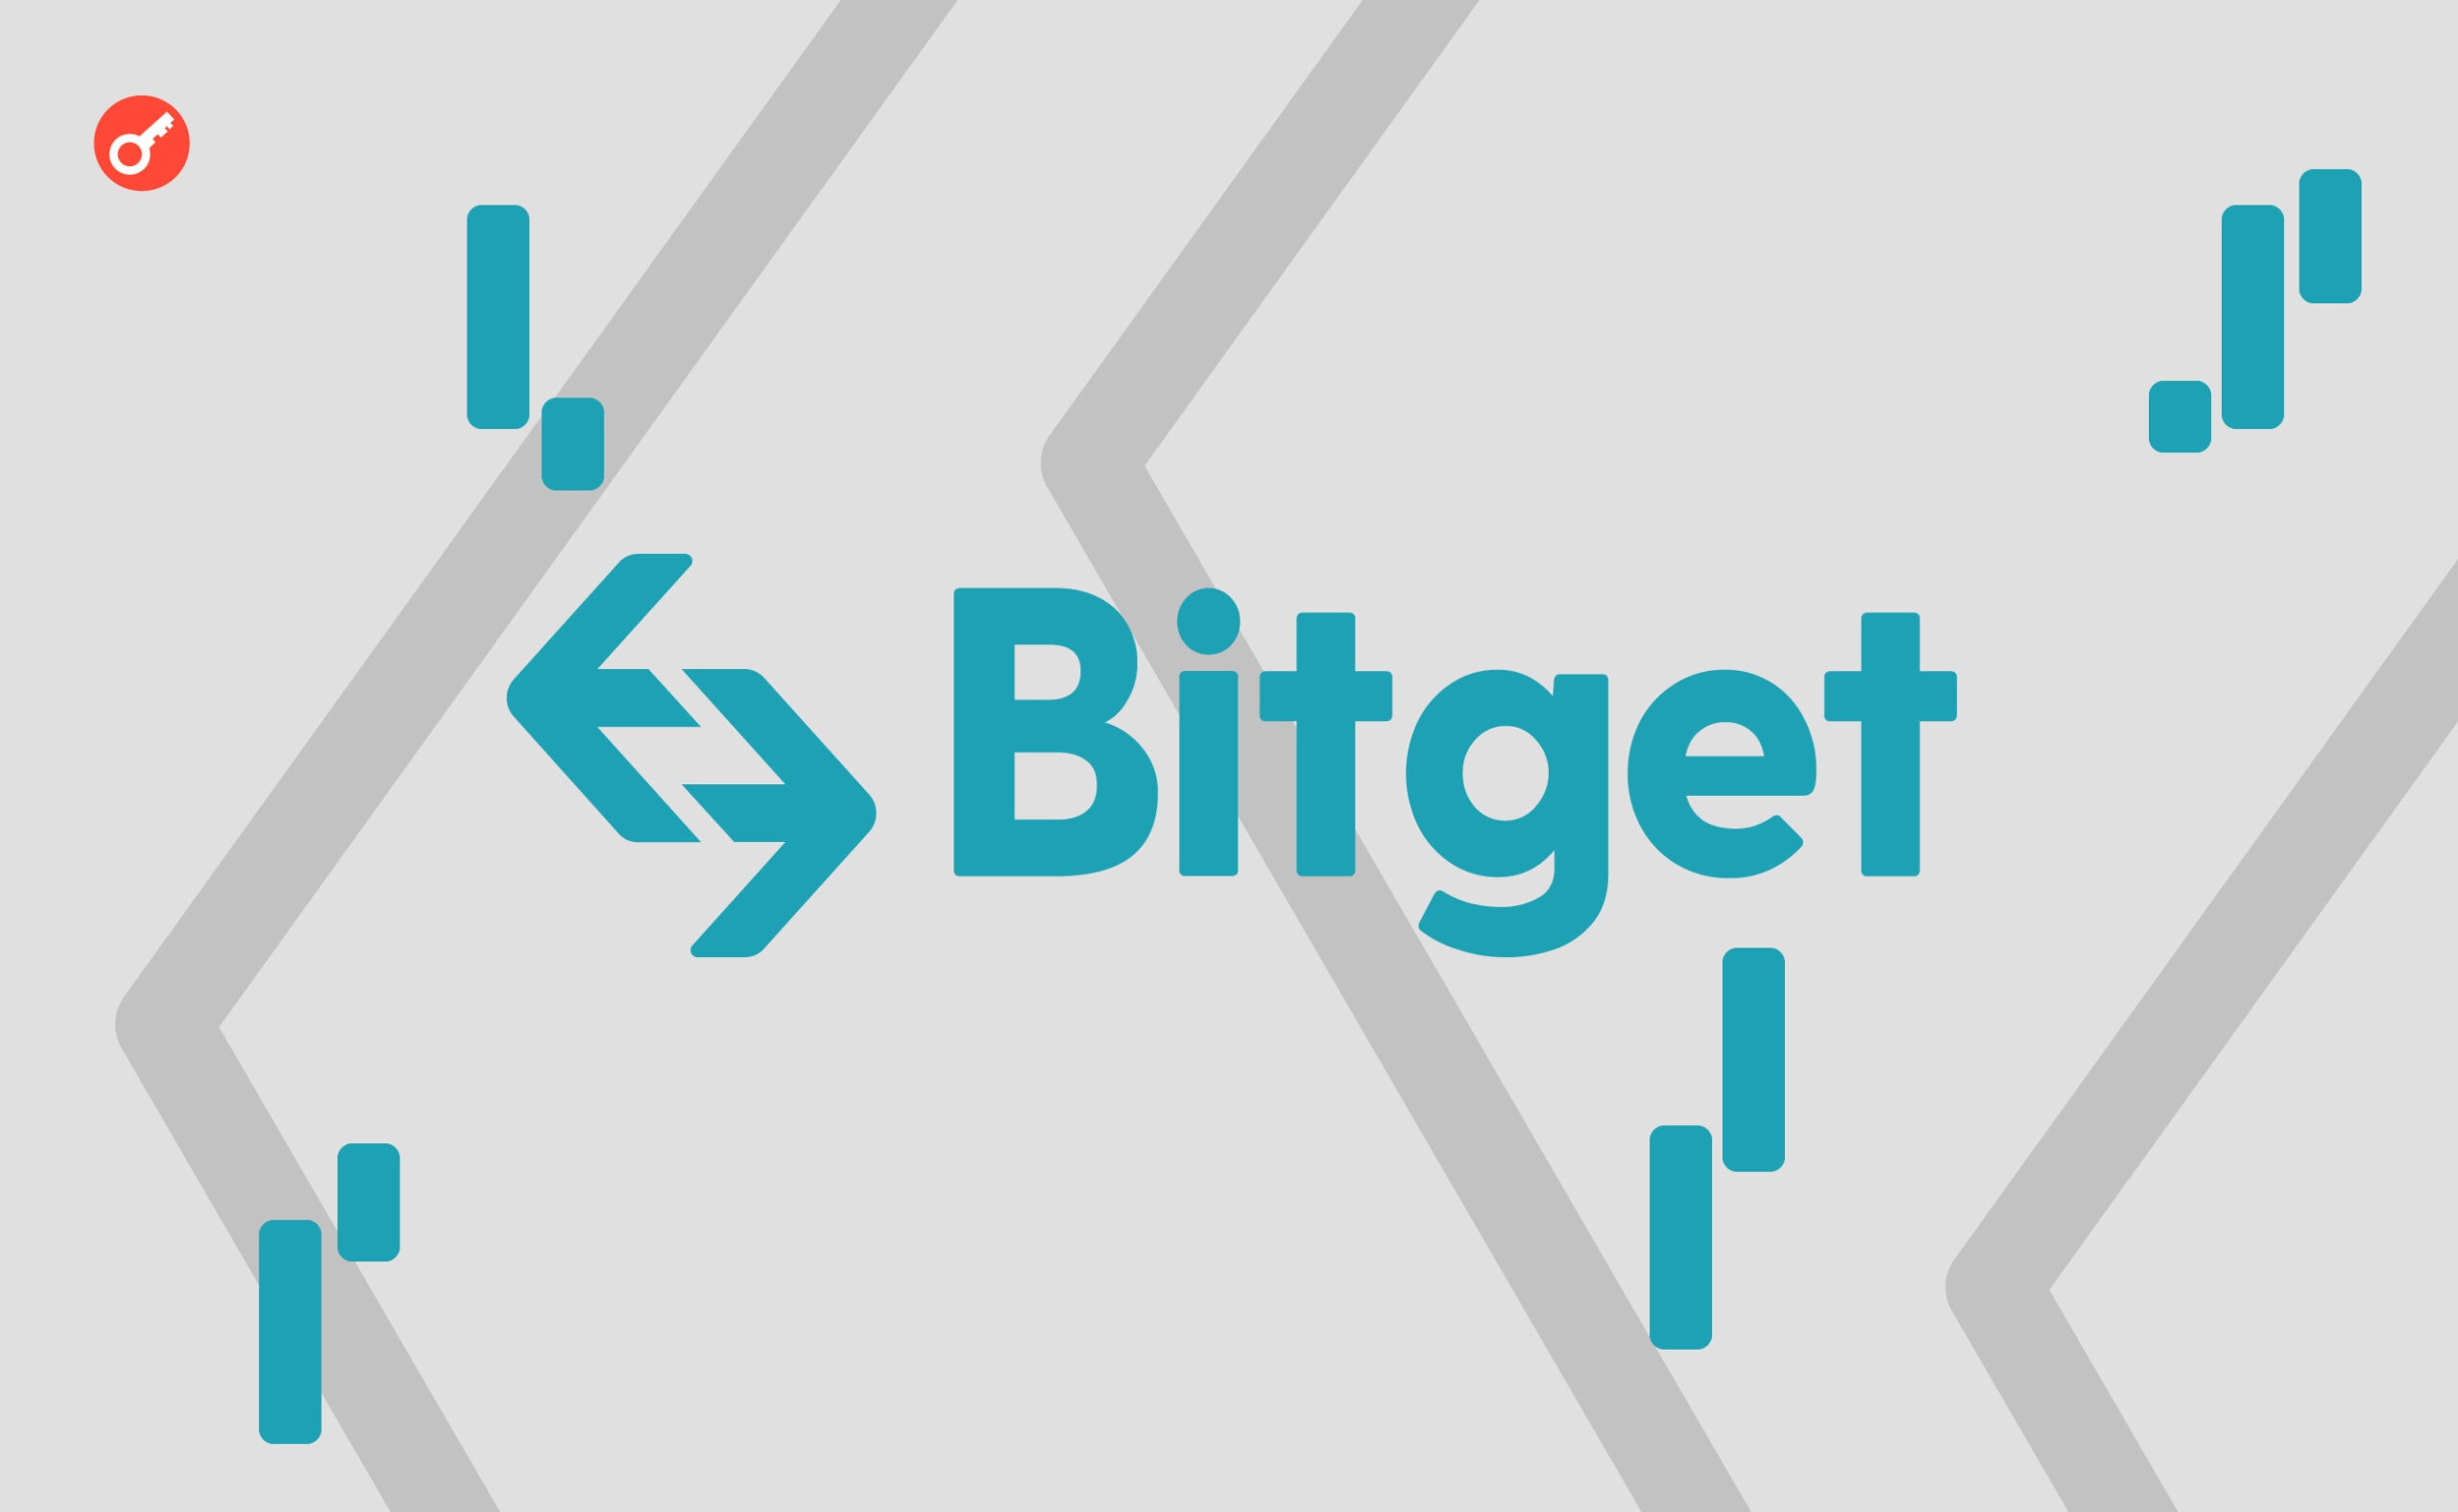 Криптобиржа Bitget запустила партнерские программы для блогеров, лидеров мнений и трейдеров из Украины. Заглавный коллаж новости.